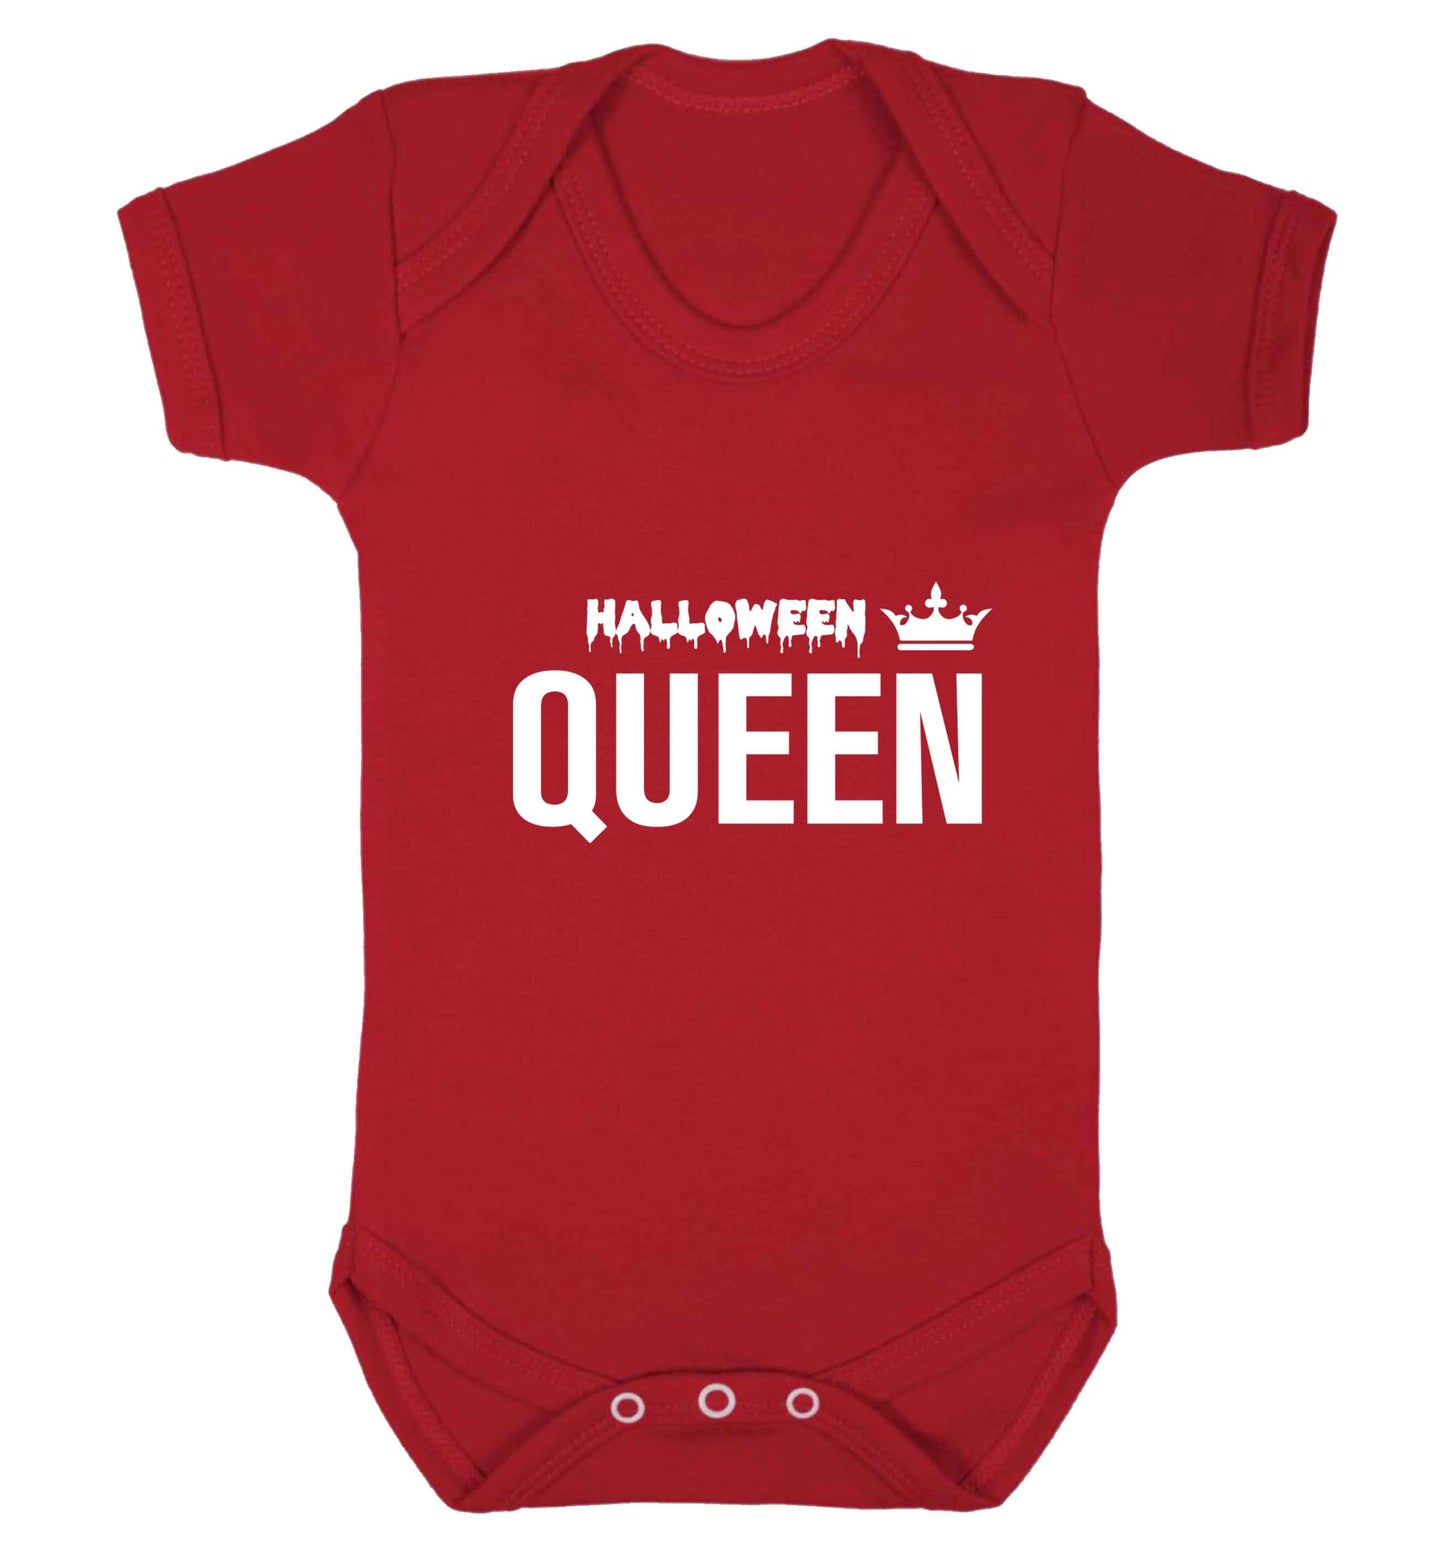 Halloween queen baby vest red 18-24 months